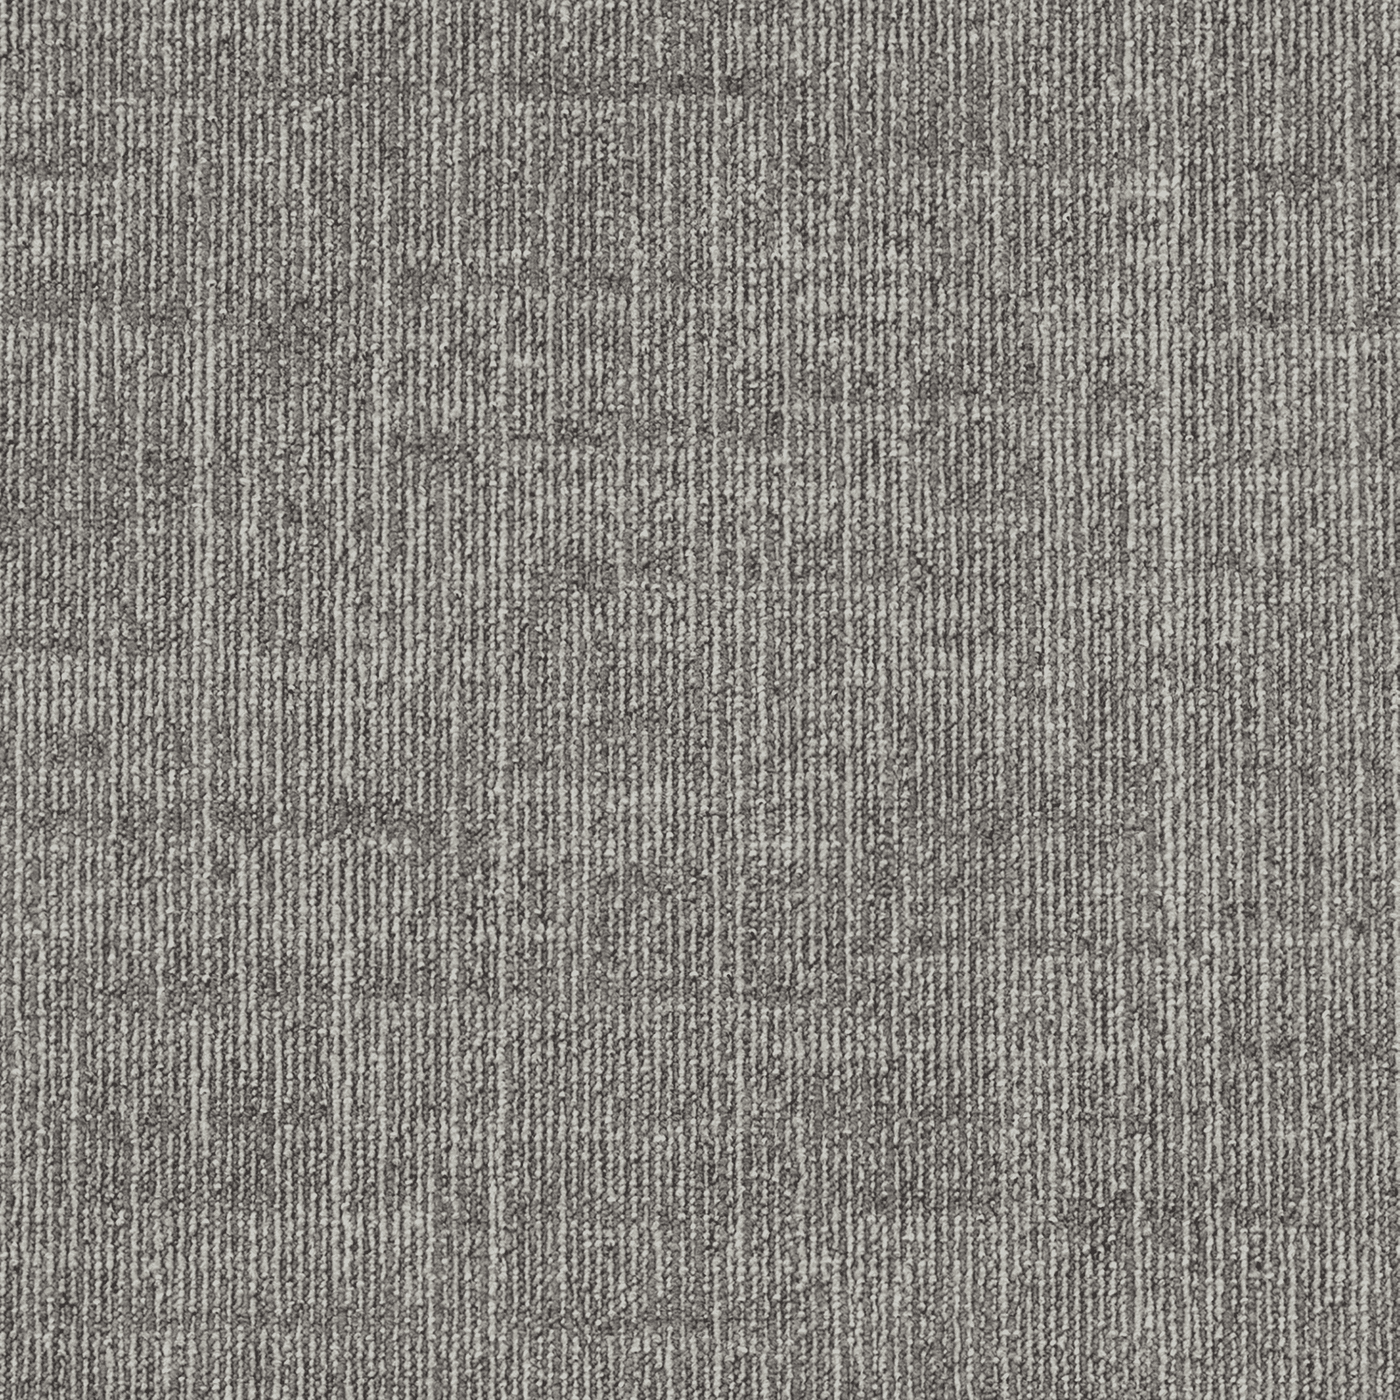 Calmly - Innovflor Carpet Tiles